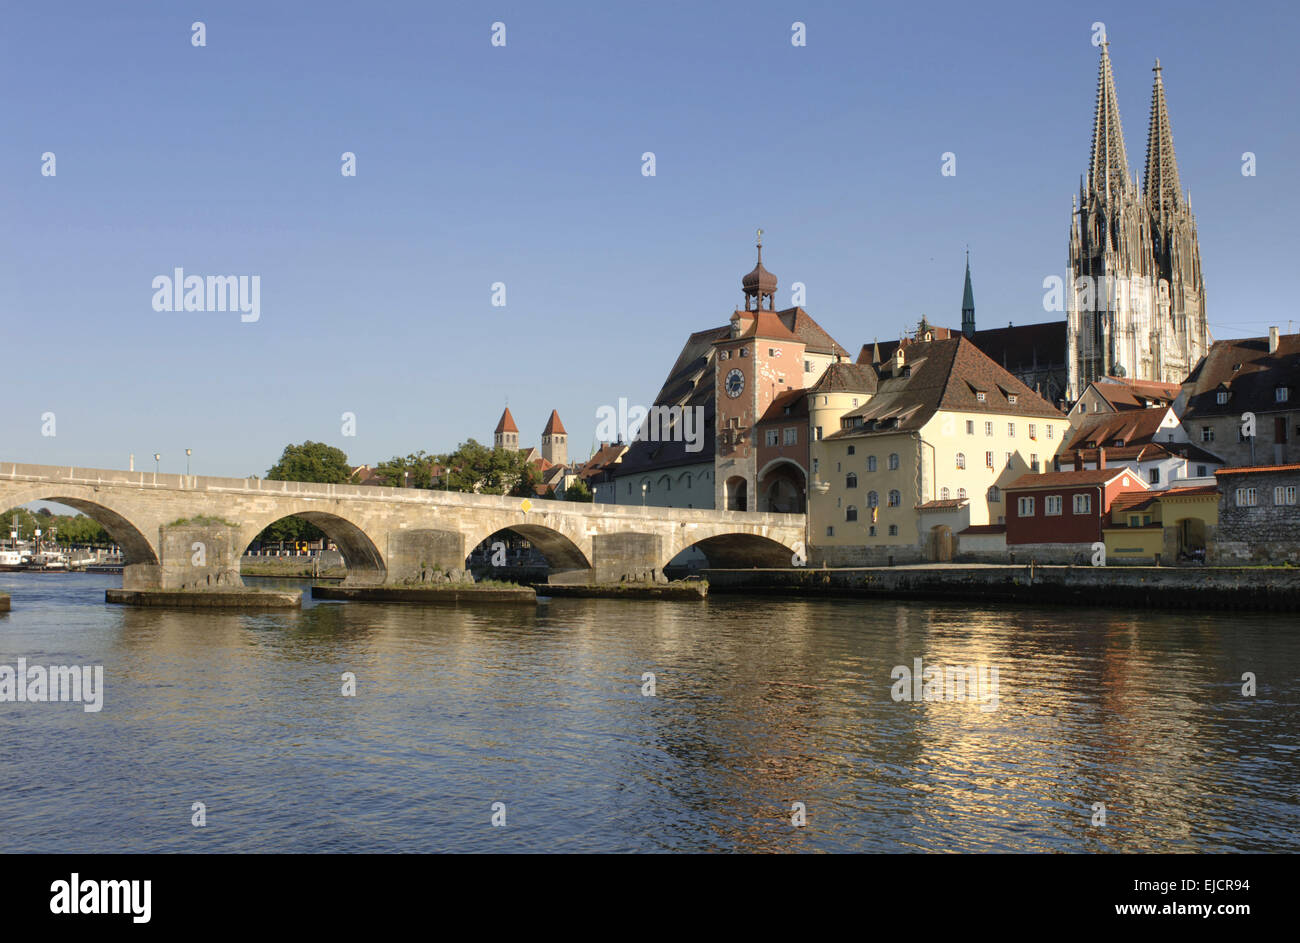 german city Regensburg with old stone bridge Stock Photo